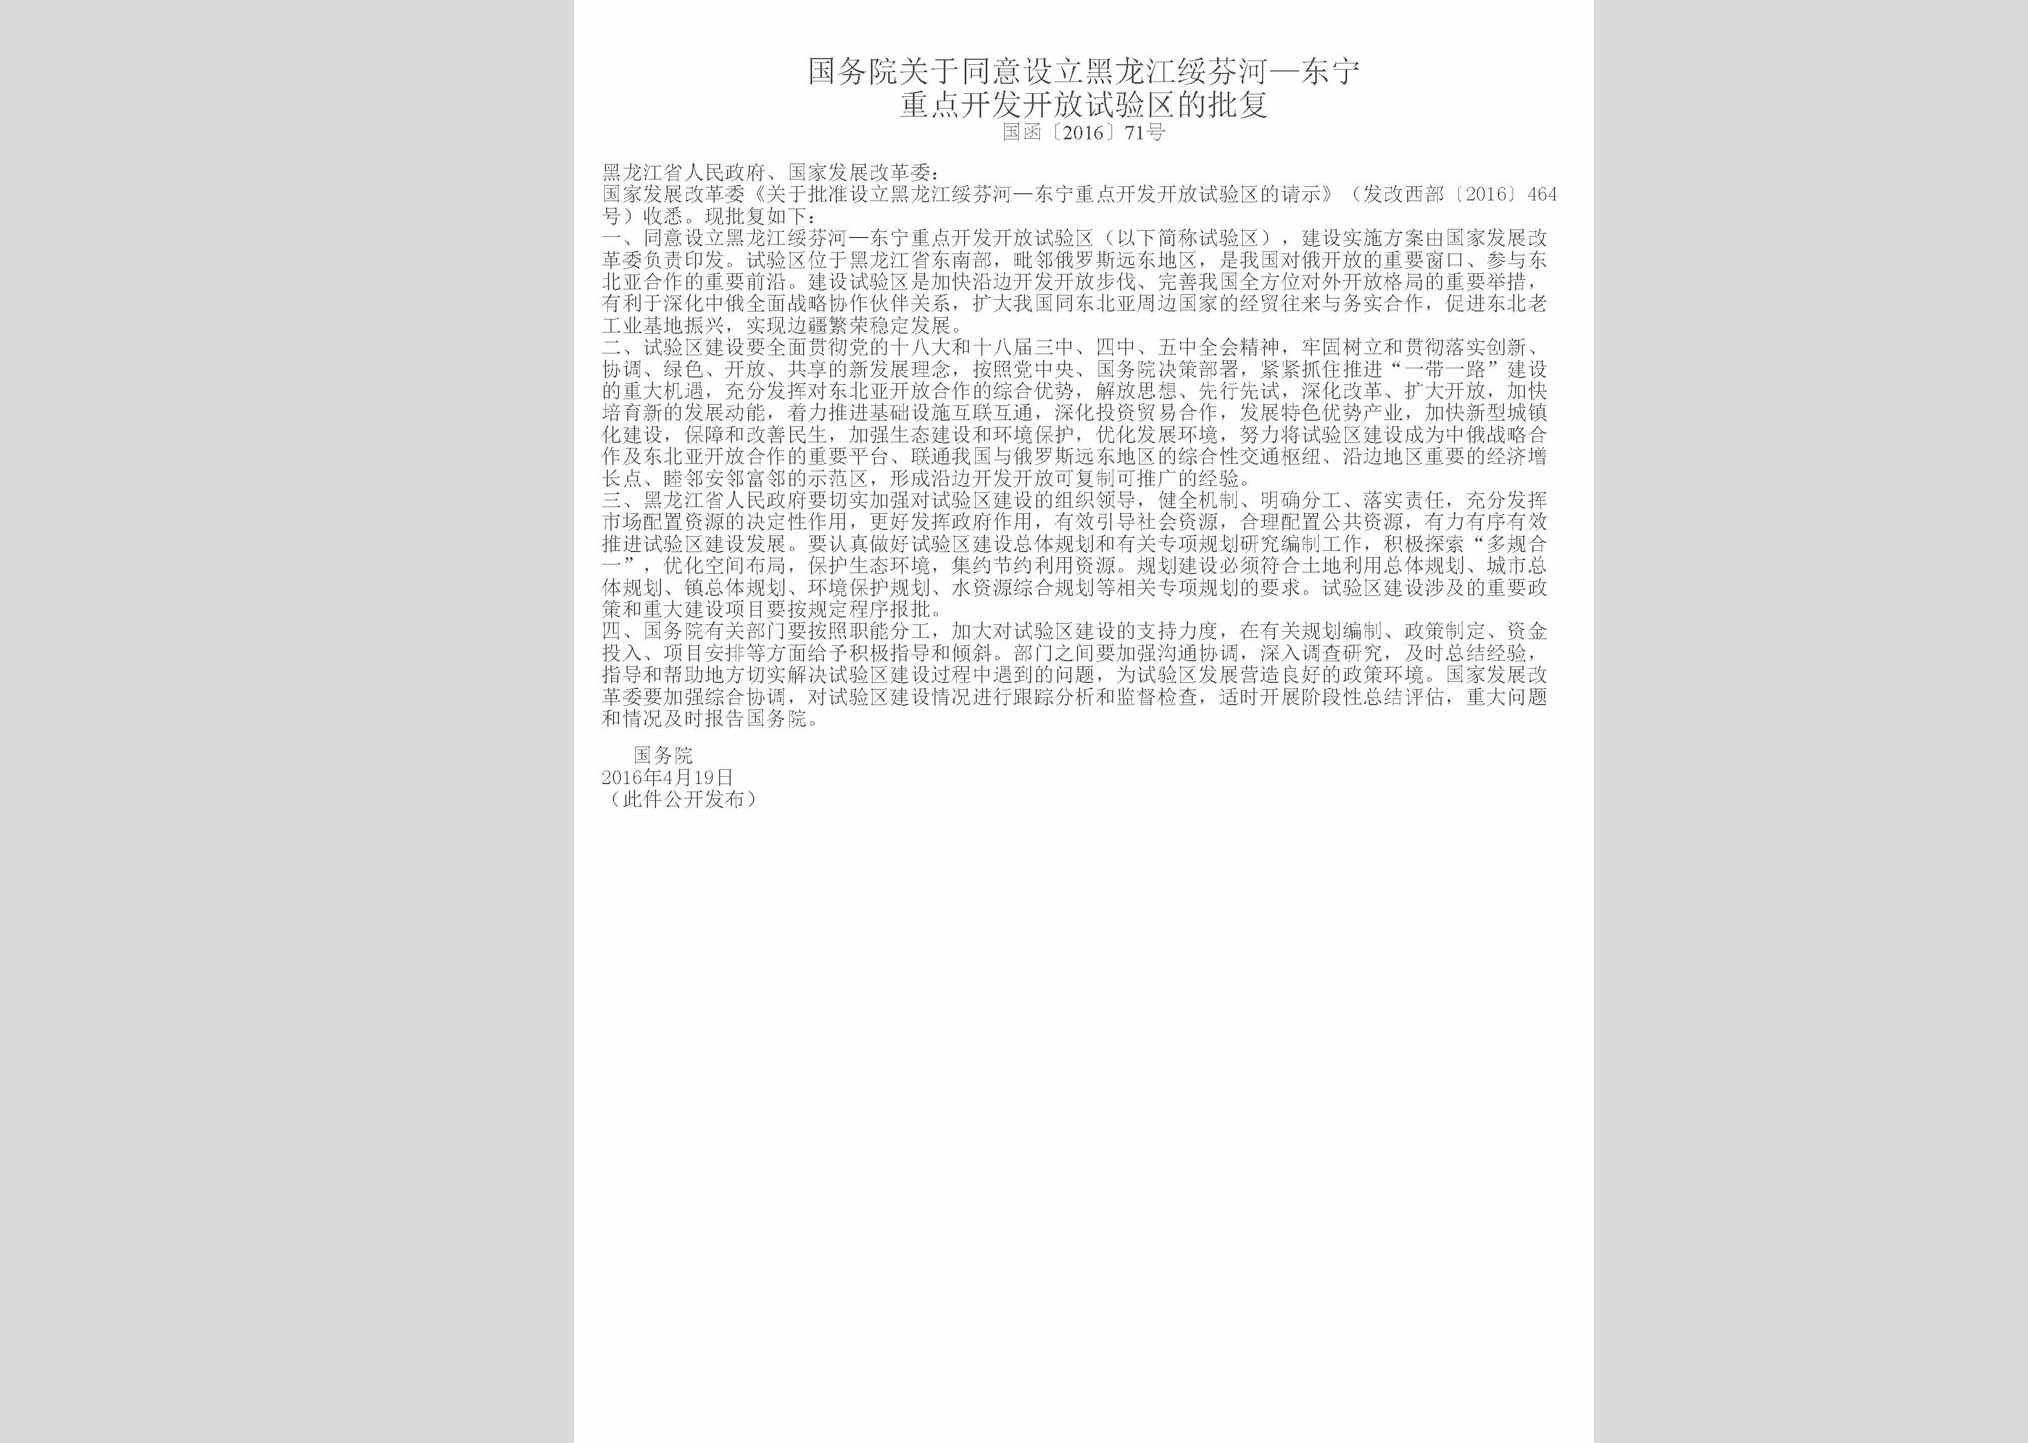 国函[2016]71号：国务院关于同意设立黑龙江绥芬河—东宁重点开发开放试验区的批复